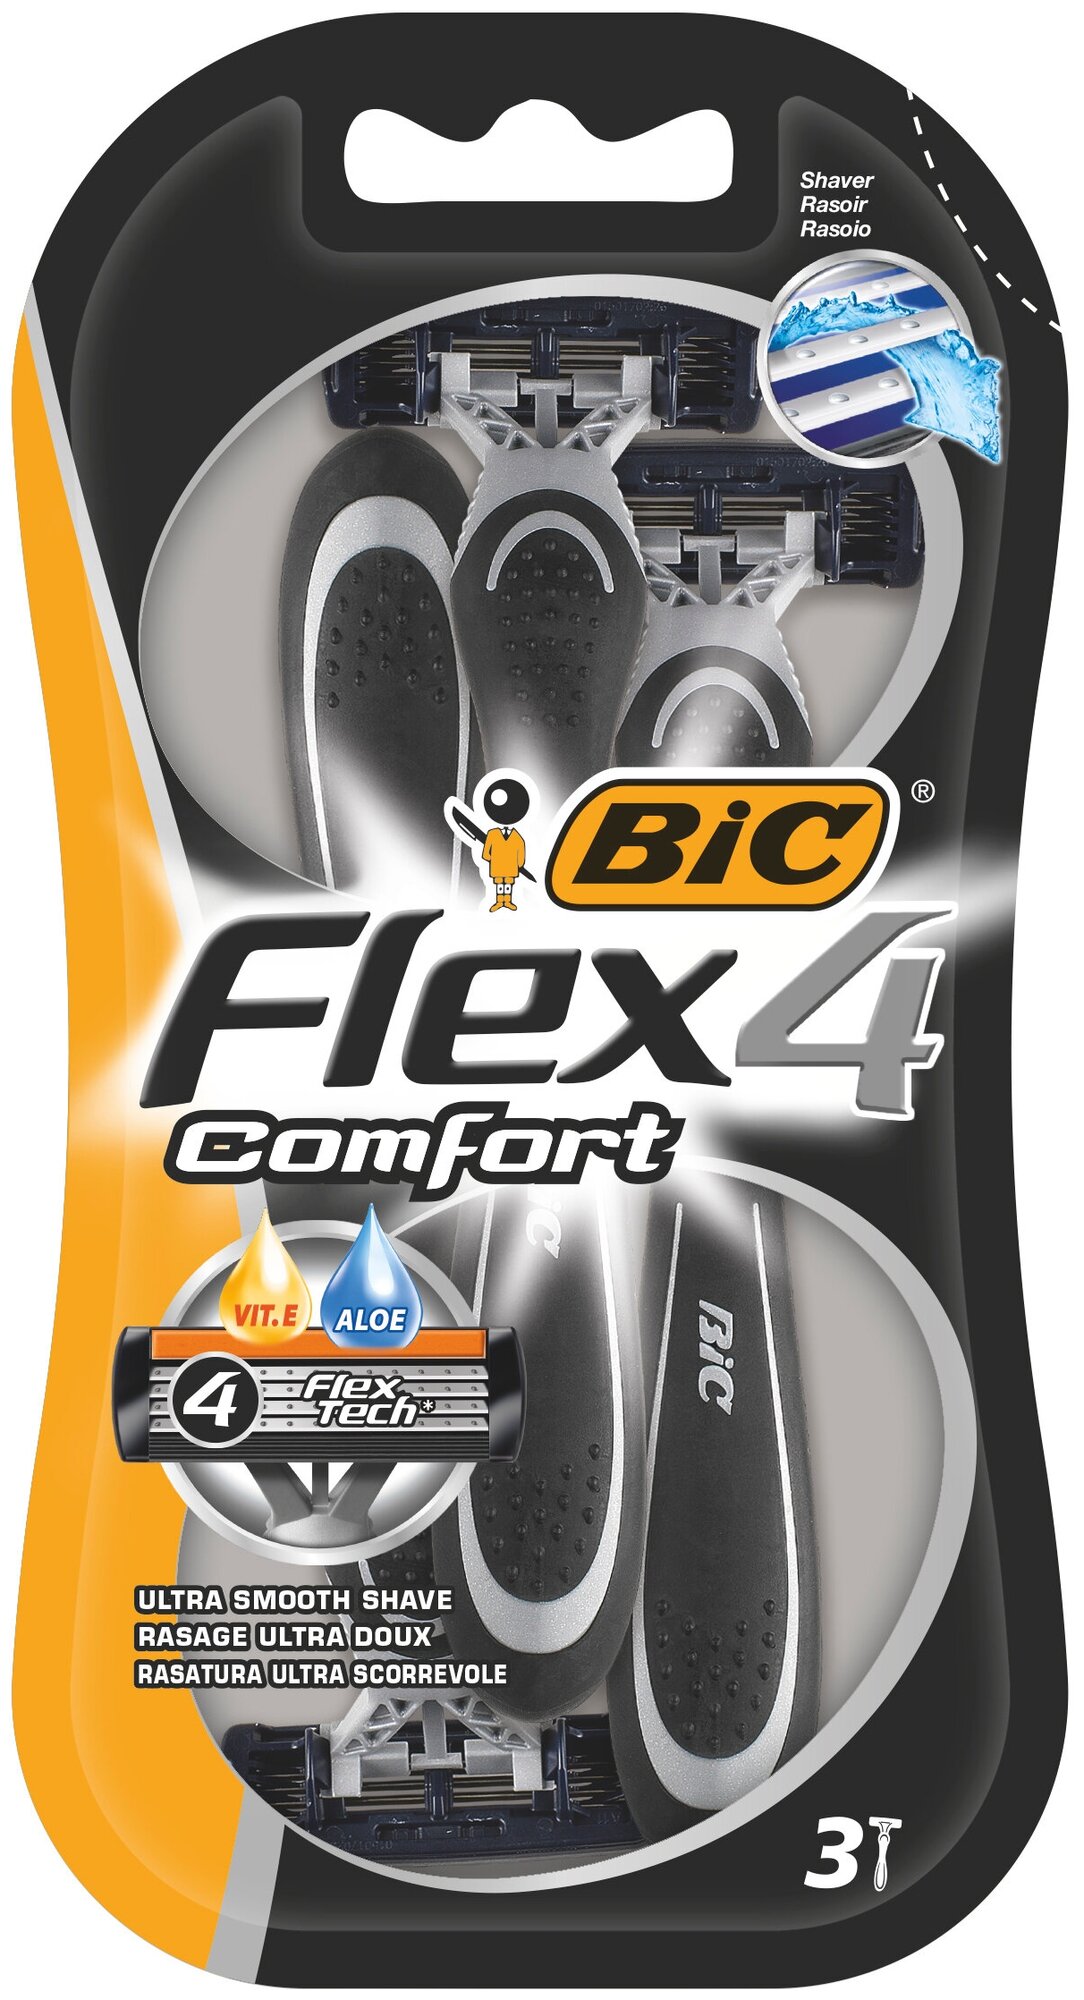 Бик Флекс Комфорт / Bic Flex 4 Comfort - Одноразовые станки для бритья 3 шт